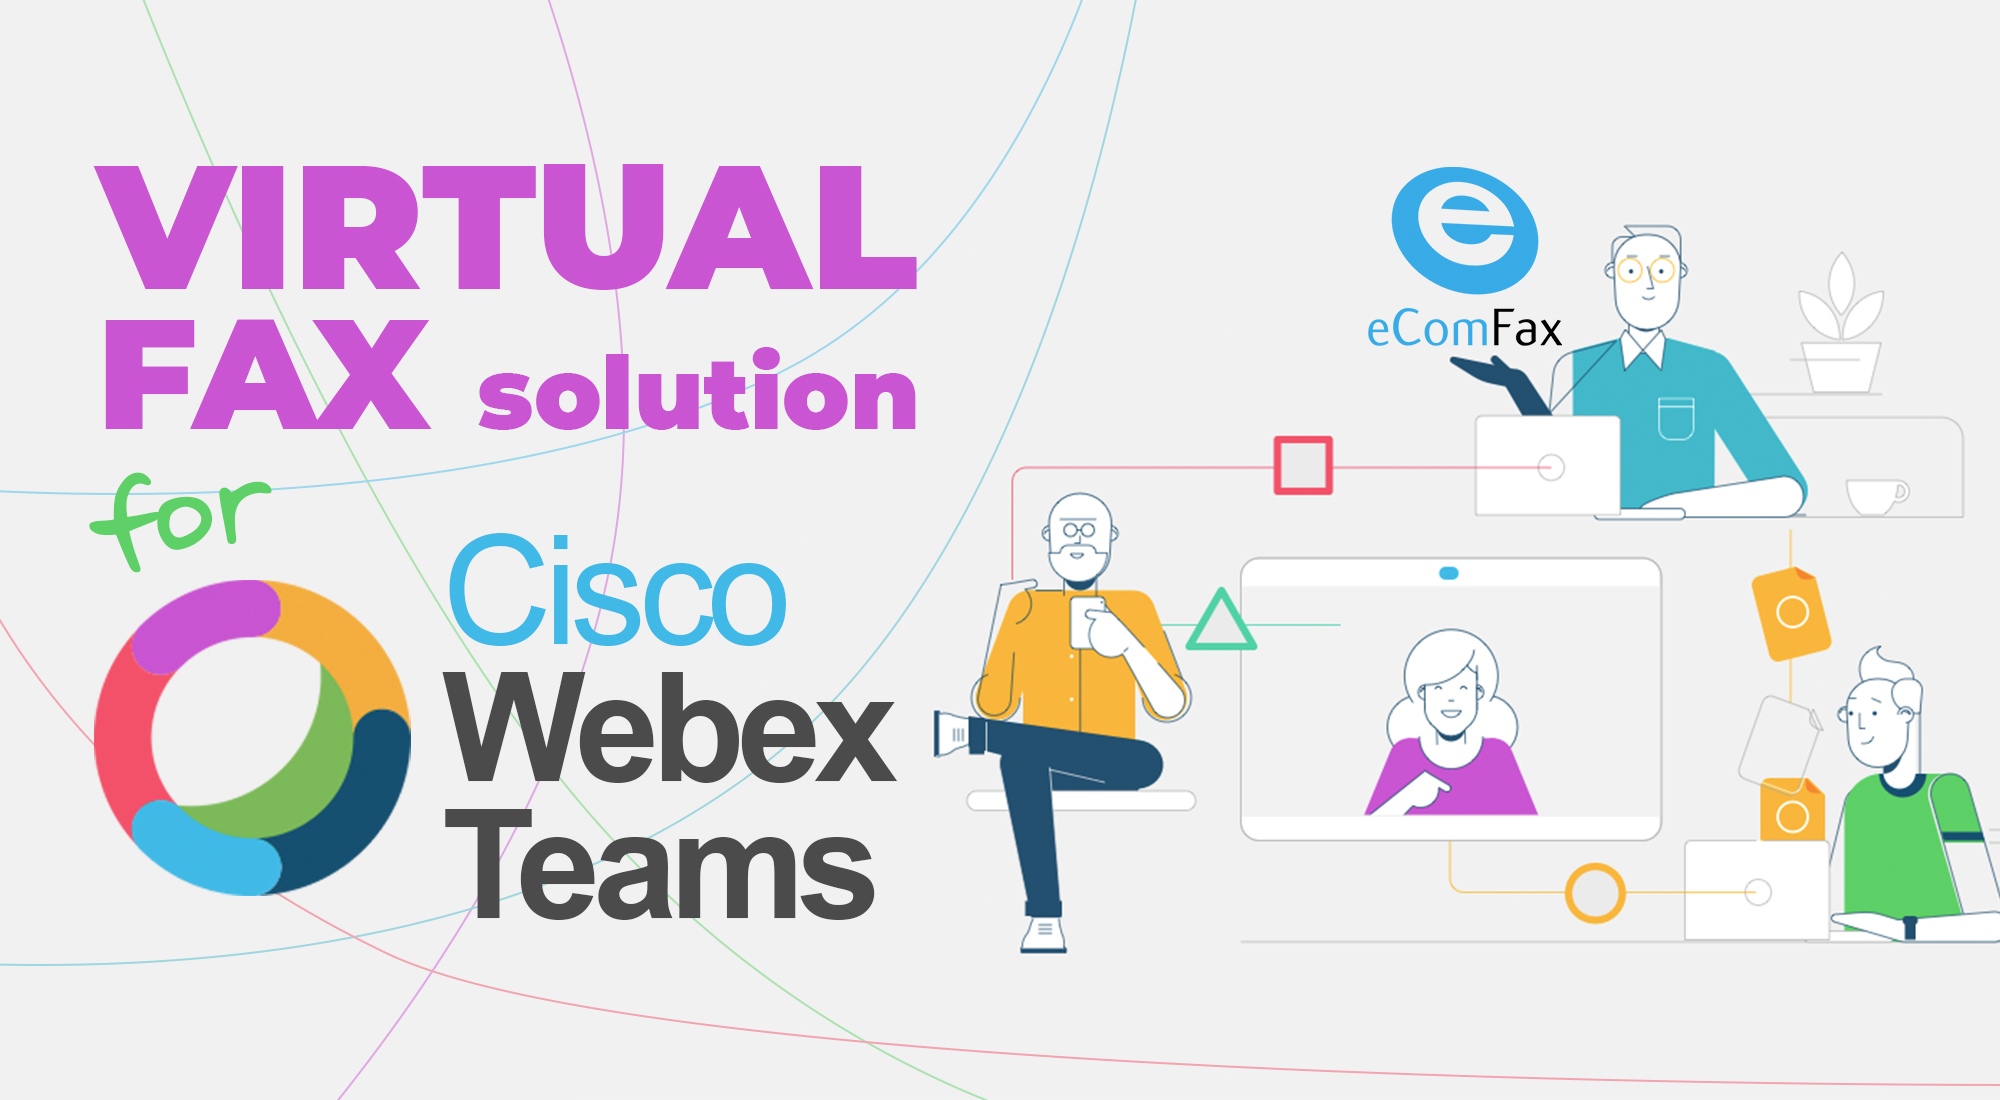 Cisco Webex Teams: Send and Receive Faxes with eComfax